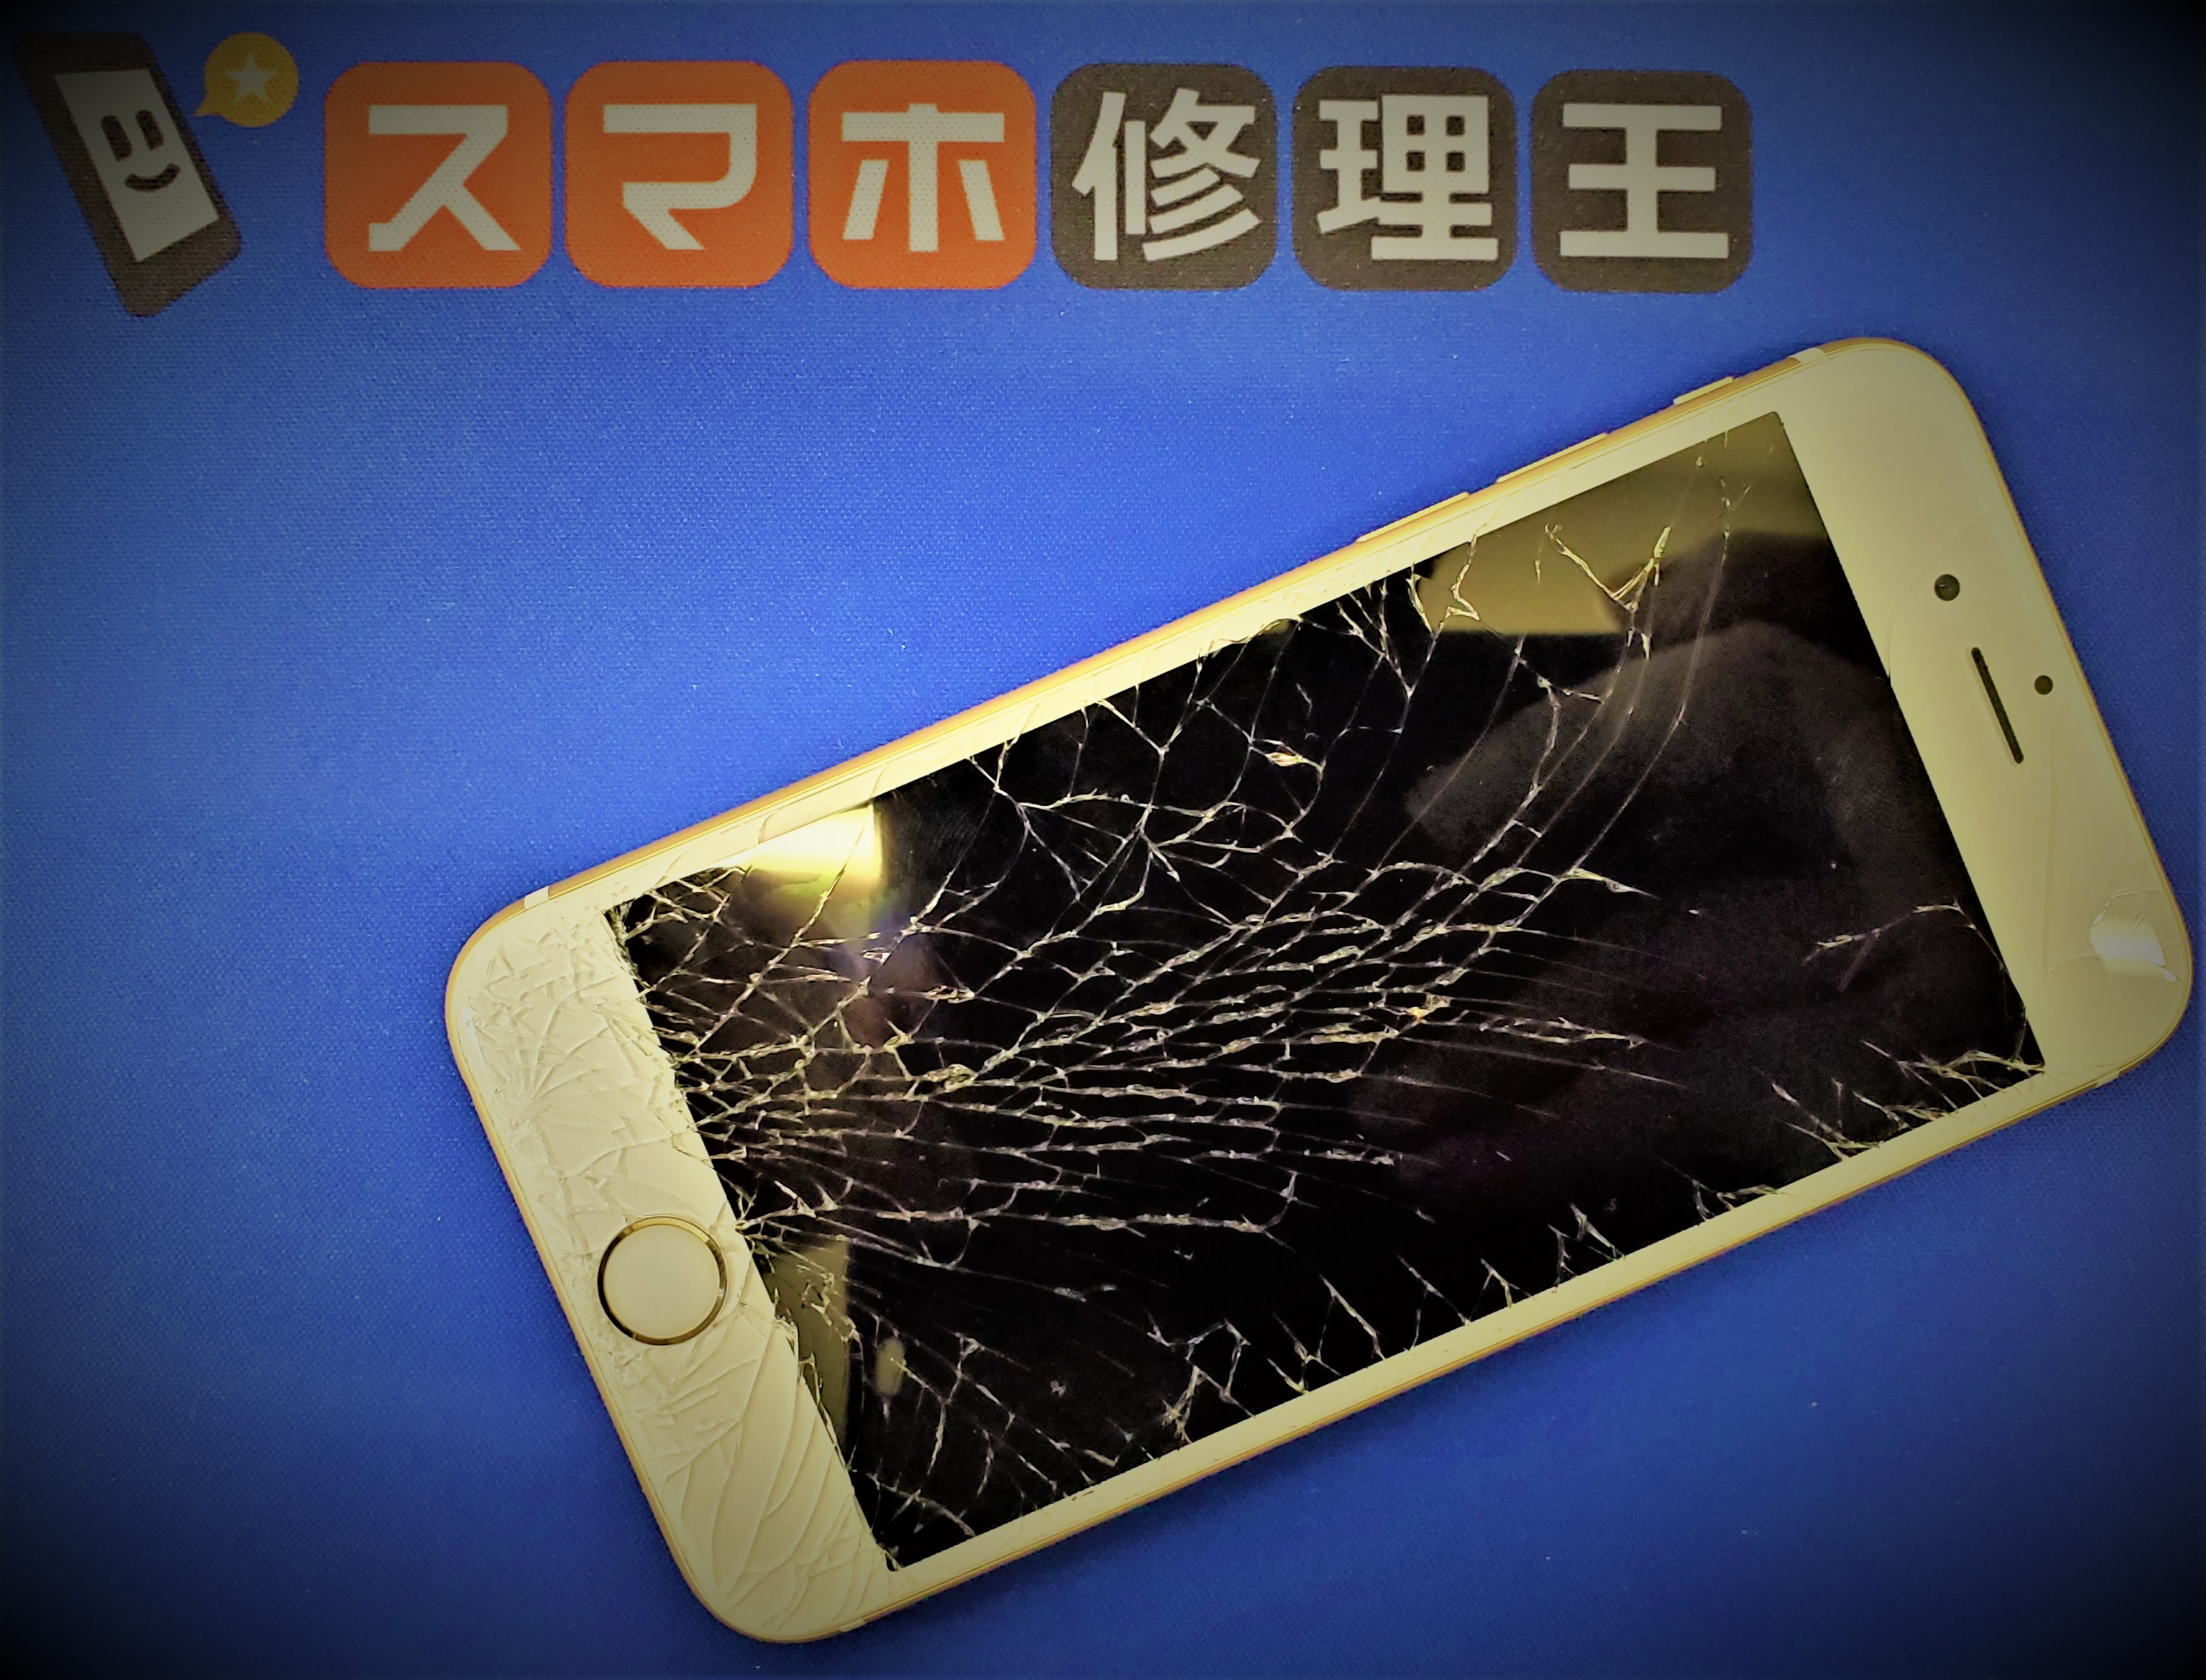 落として画面が割れた!! APPLE iPhone 6s 名古屋栄店 【スマホ修理王】